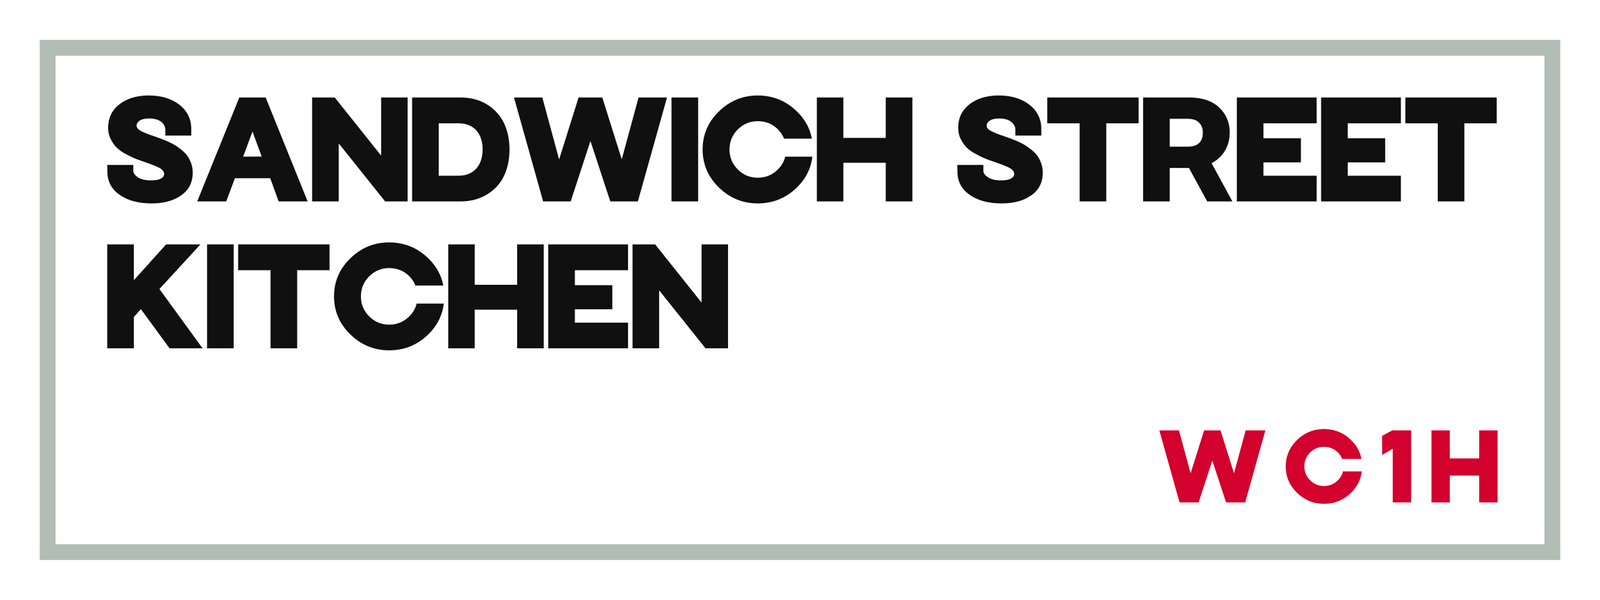 Sandwich Street Kitchen